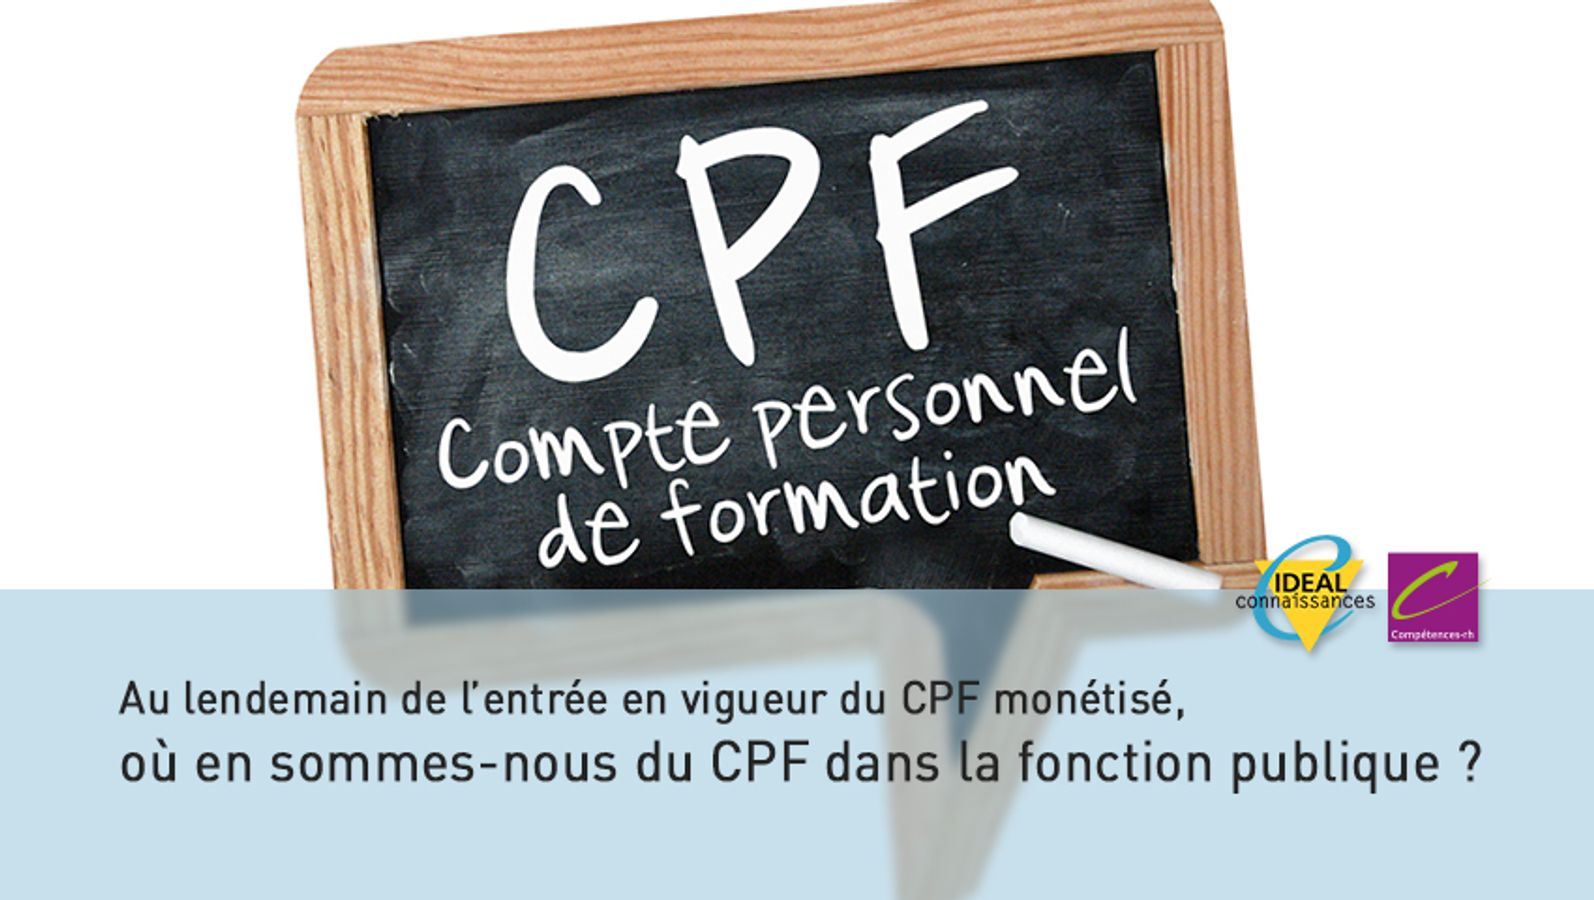 Au lendemain de l’entrée en vigueur du CPF monétisé, où en sommes-nous du CPF dans la fonction publique ?